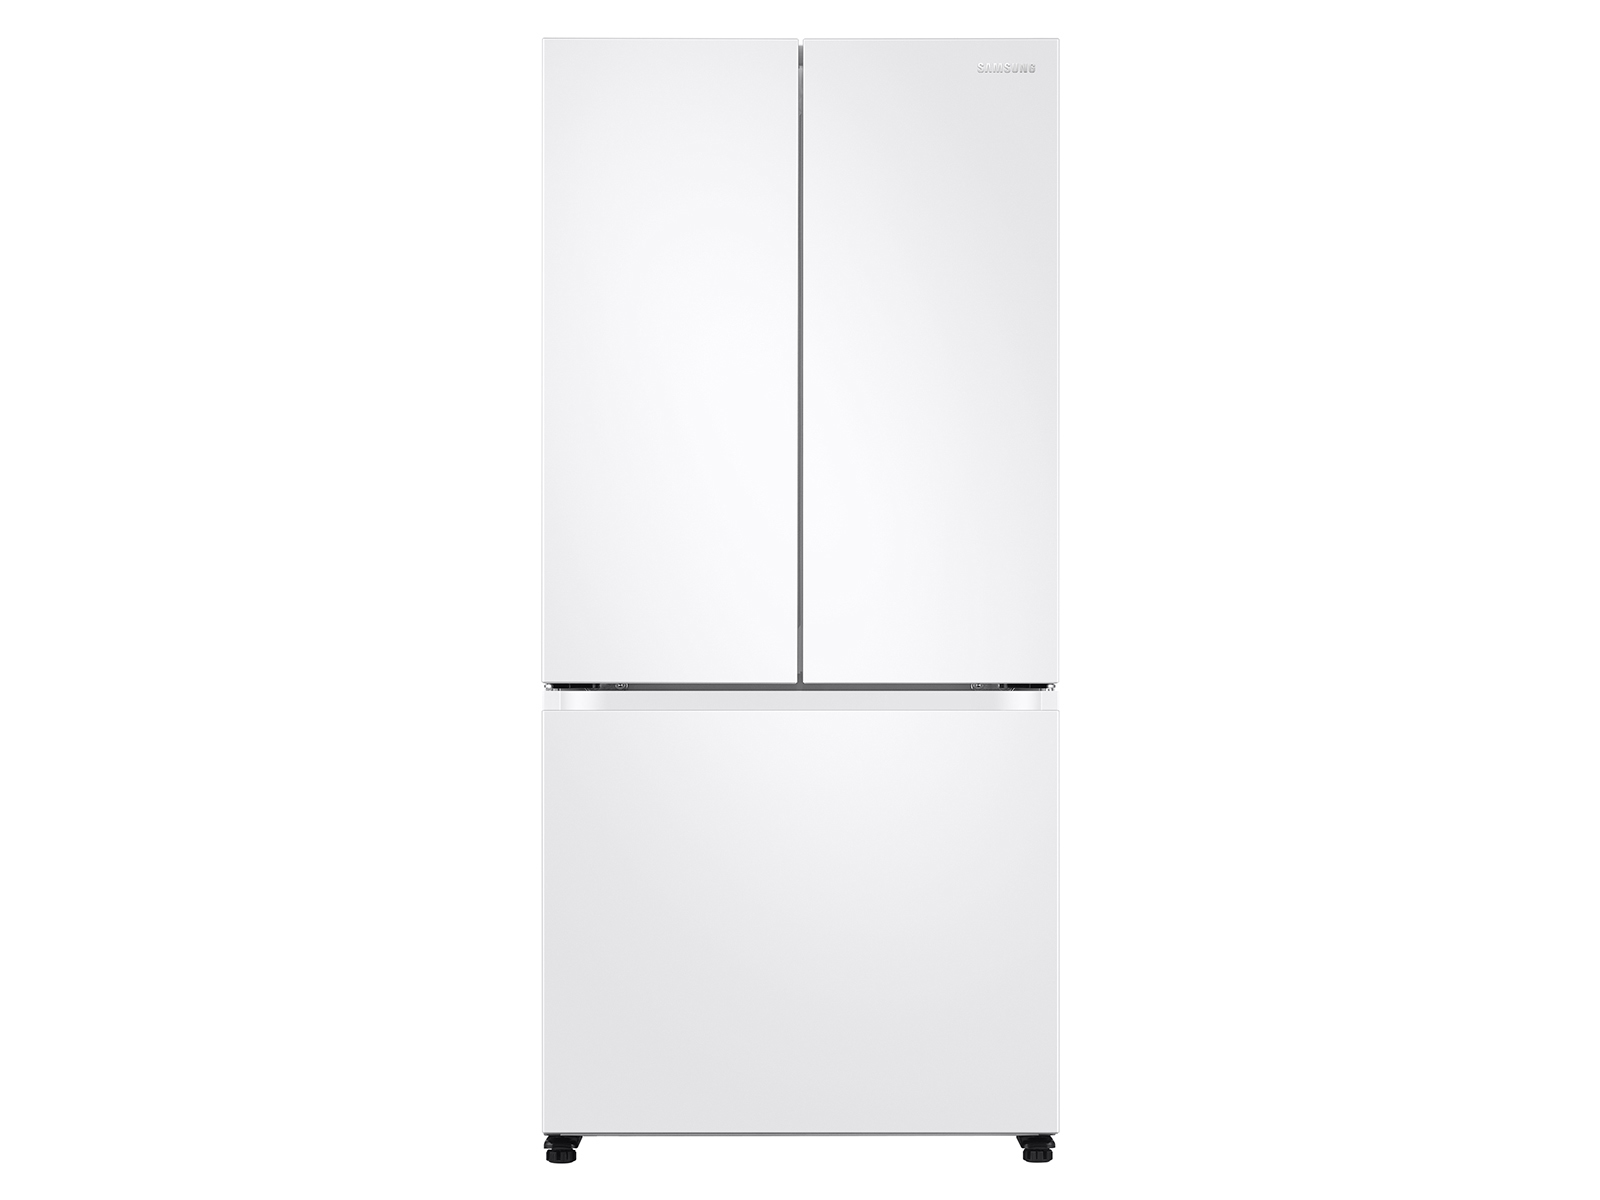 Photos - Fridge Samsung 19.5 cu. ft. Smart 3-Door French Door Refrigerator in White(RF20A5 